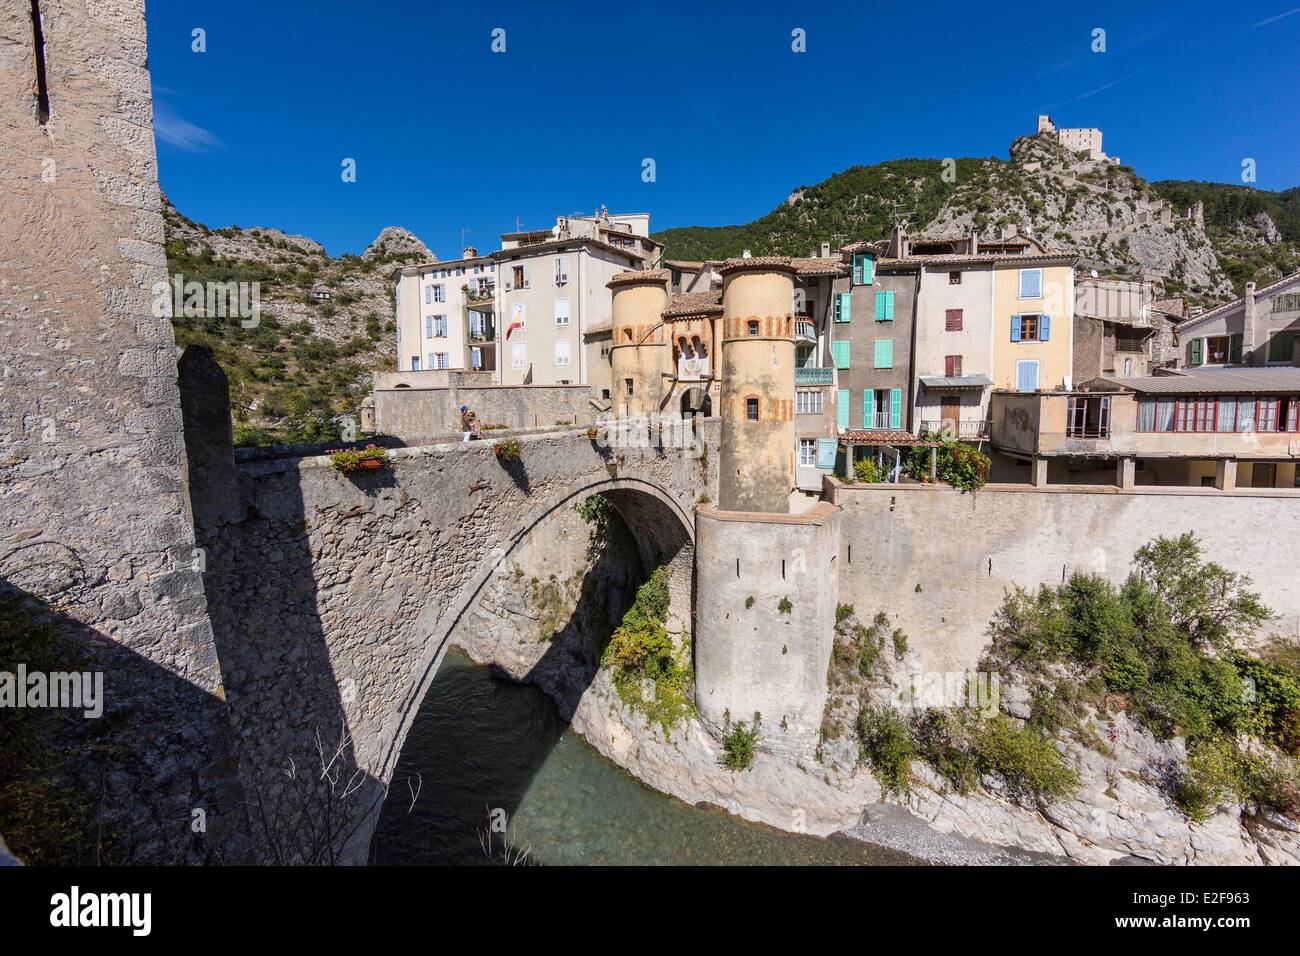 Francia, Alpes de Haute Provence, Entrevaux ciudad medieval fortificada por Vauban Foto de stock